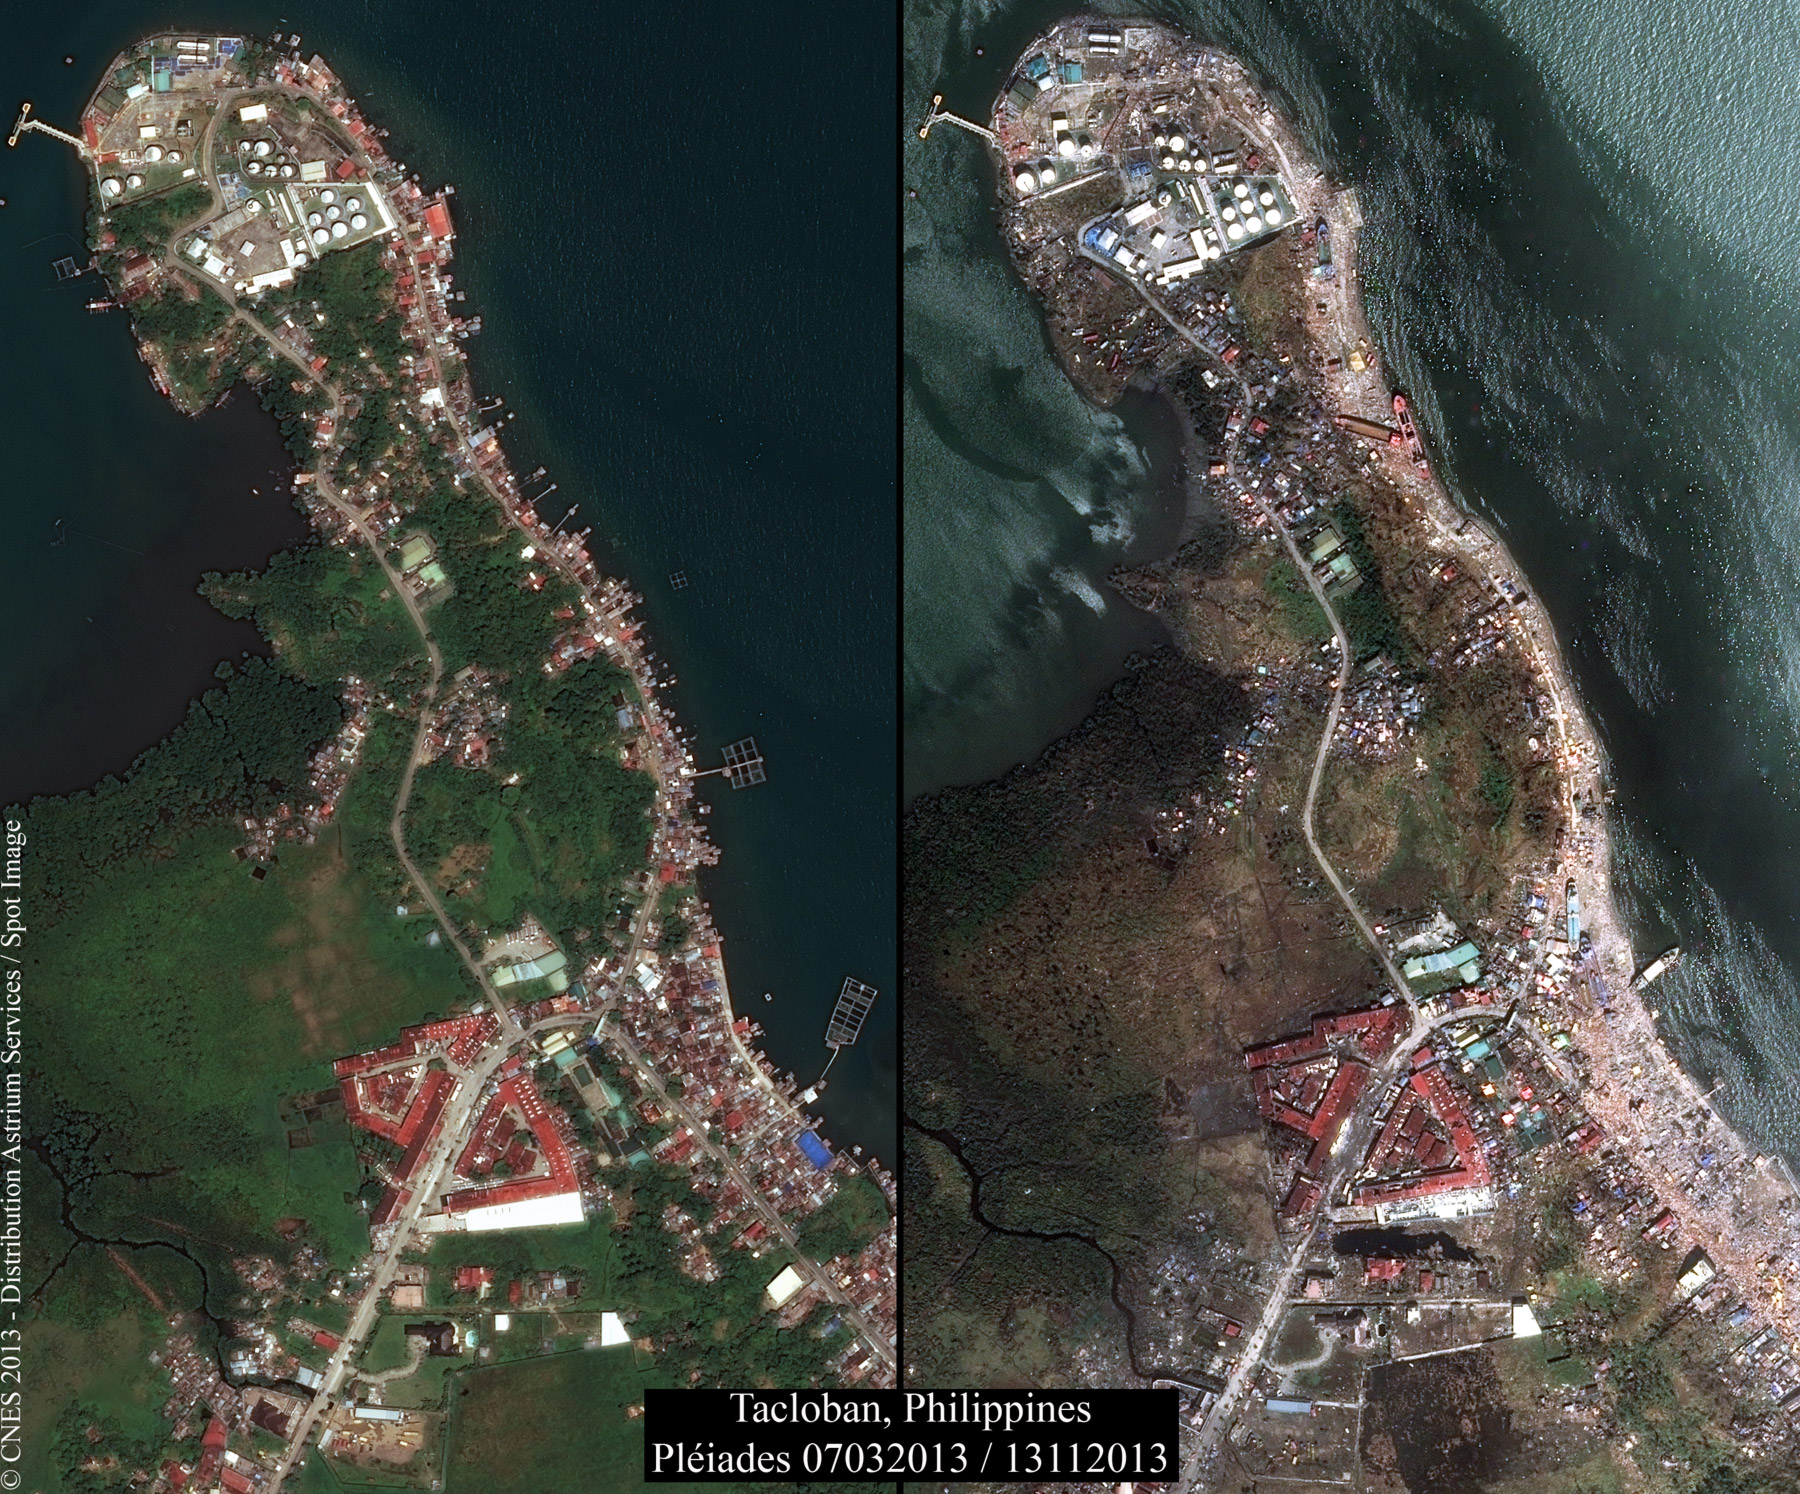 Ces deux images montrent les effets du typhon Haiyan, qui s'est abattu sur les Philippines le 8 novembre 2013, et l’étendue des dégâts qu'il a provoqués. Les deux scènes ont été acquises par un satellite Pléiades le 7 mars 2013 et le 13 novembre 2013. © Cnes, Distribution Astrium Services, Spot Image, 2013